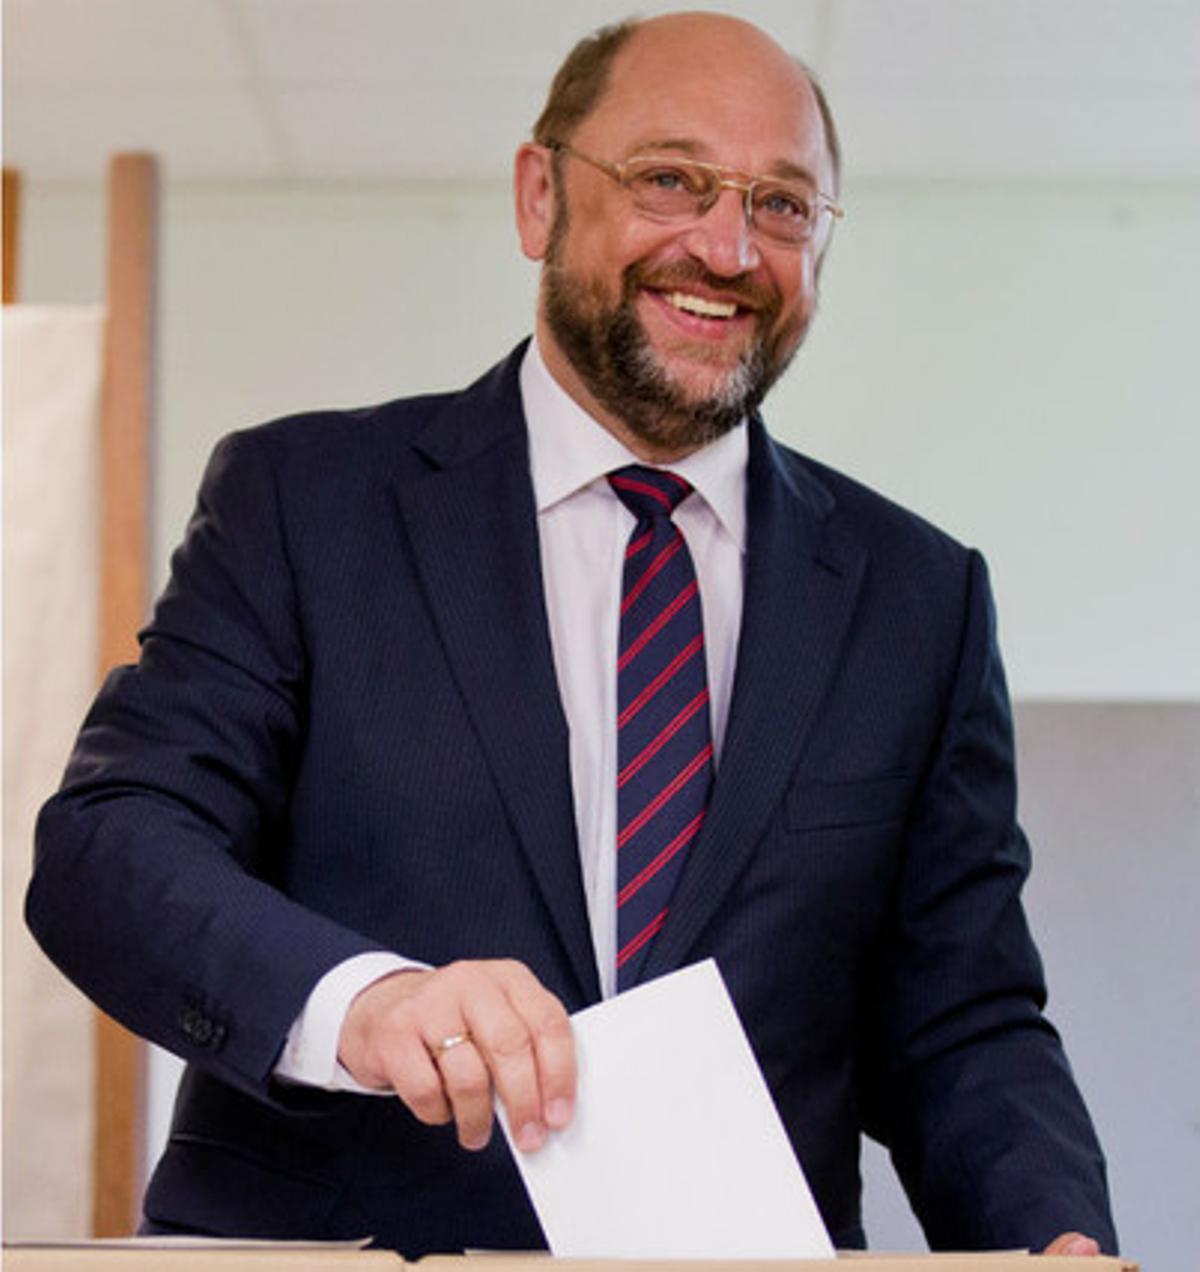 Candidat del partit social demòcrata, Martin Schulz, vota a Alemanya.